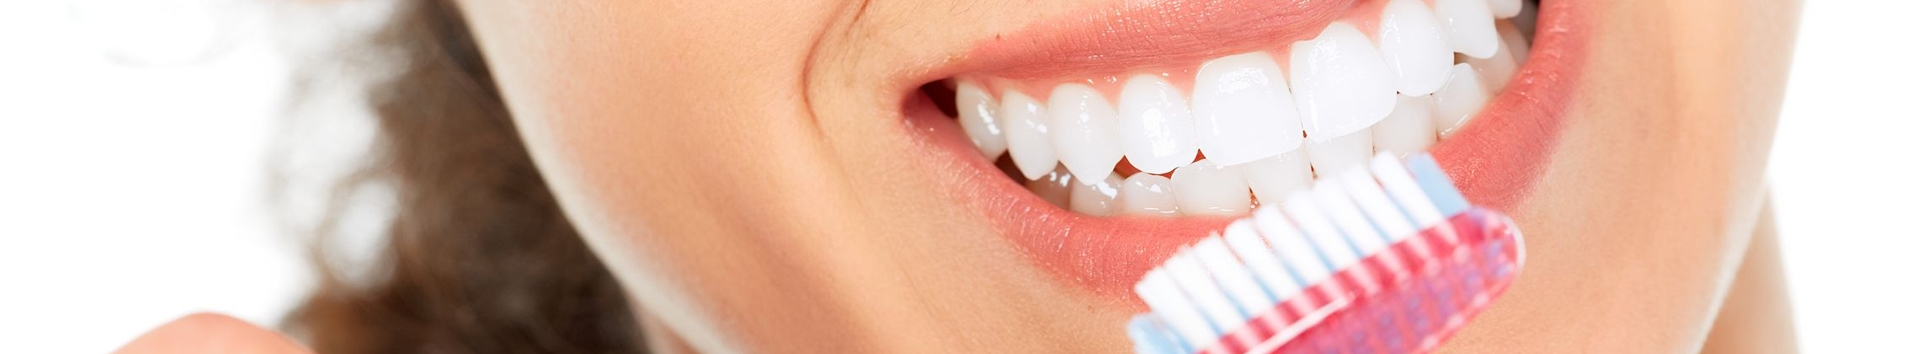 Porque a escovação dos dentes é essencial para prevenir cáries?